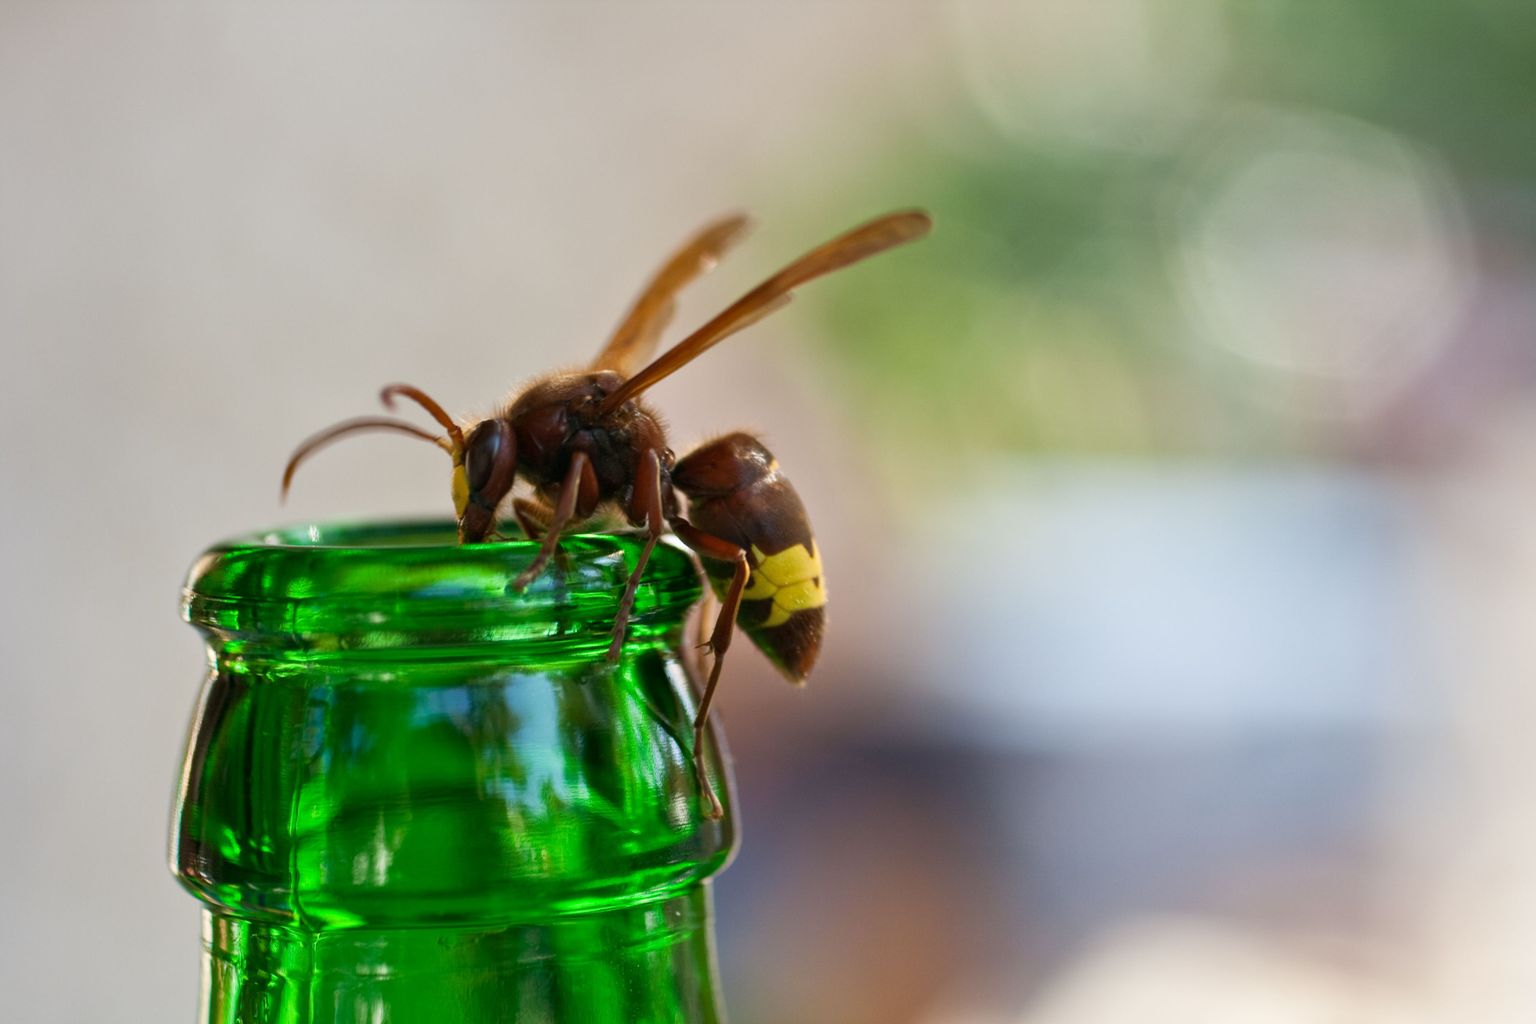 Suvel ei tohiks juua läbipaistmatutest pudelitest ega purkidest, sest alati ei pruugi sinna ronivat herilast või mesilast märgata.